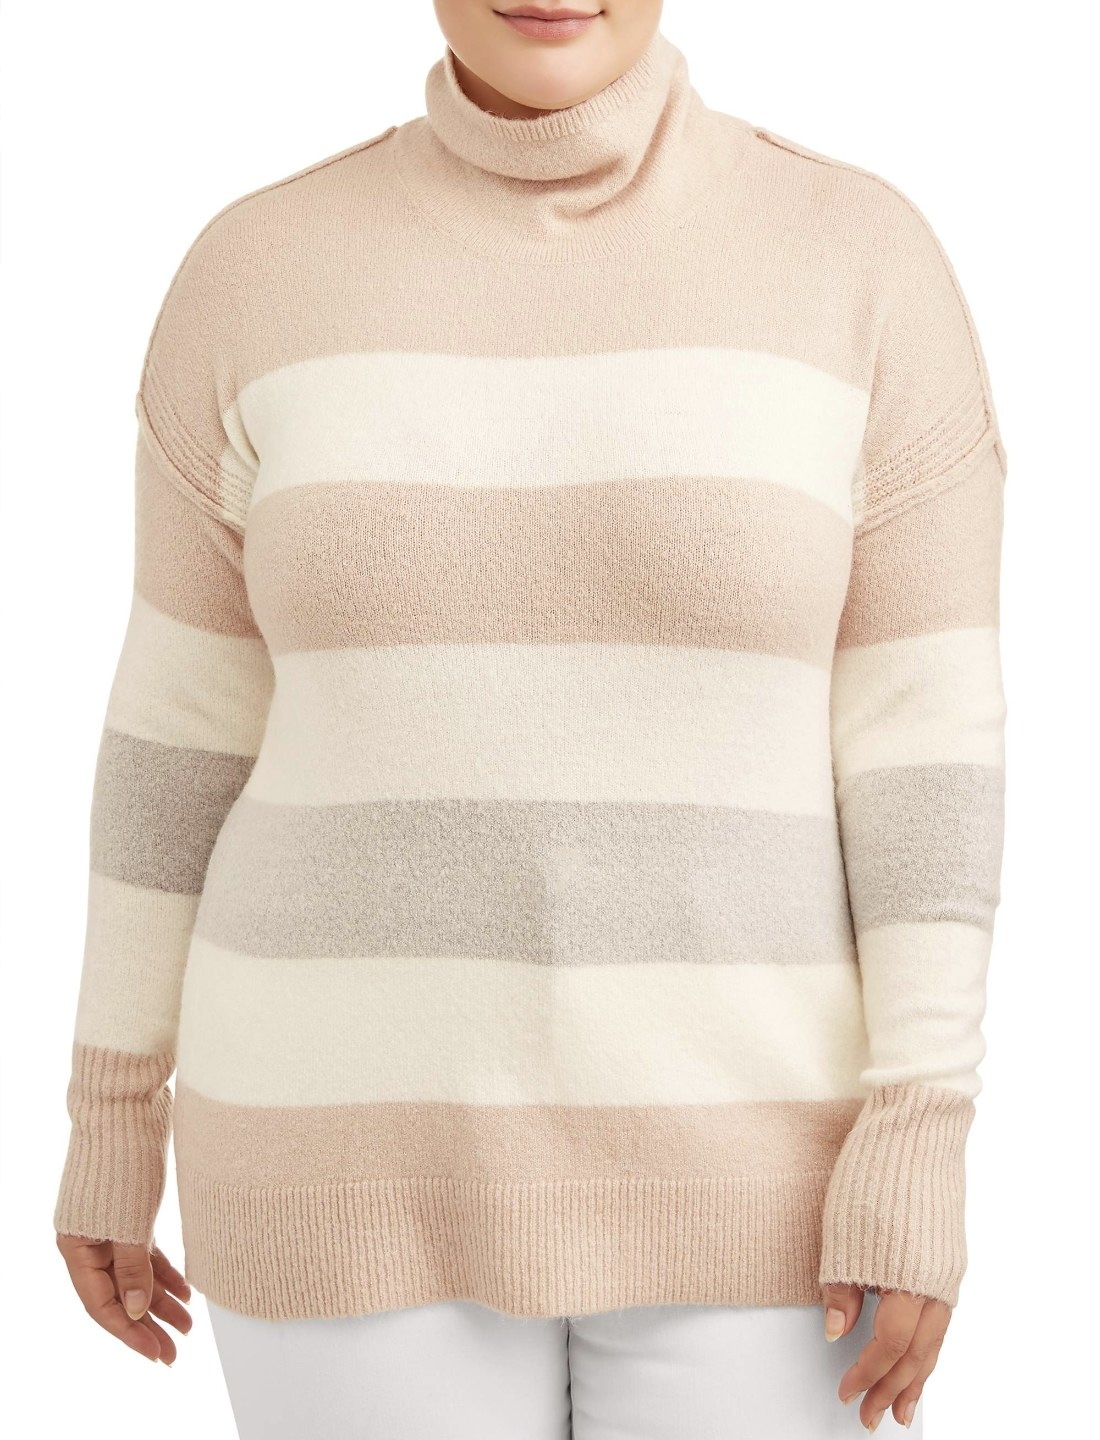 Model in the cream striped sweater